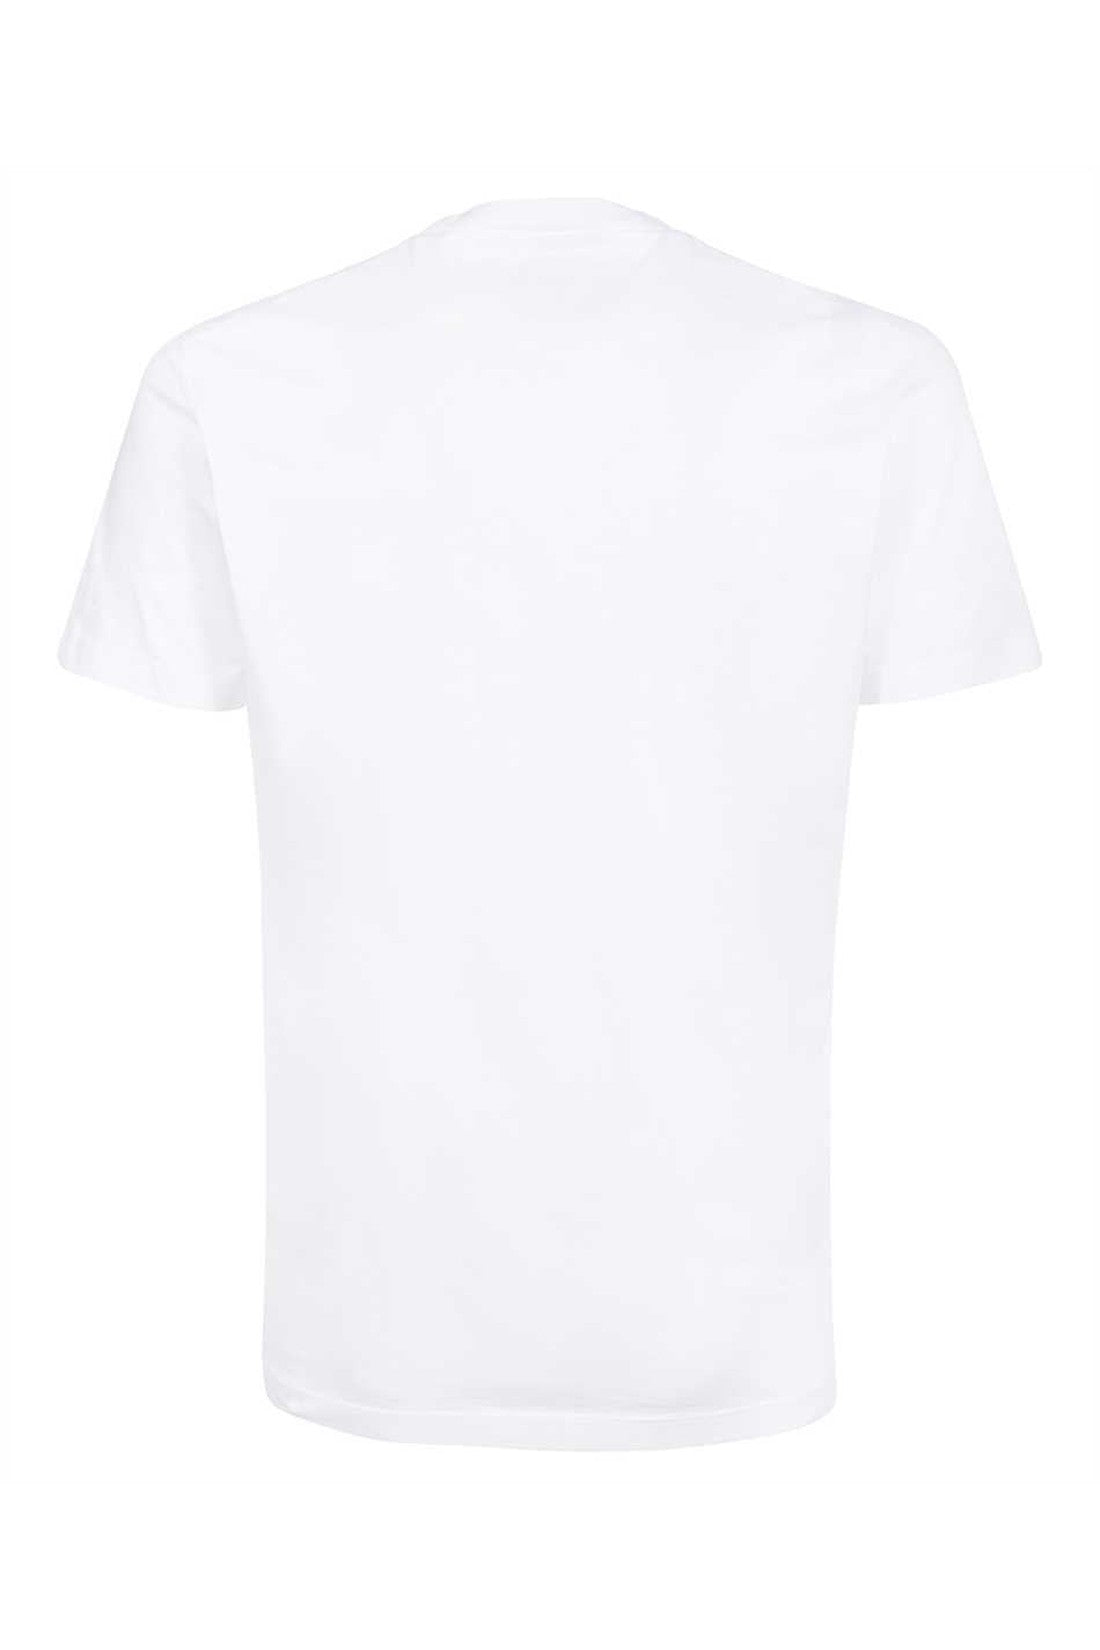 Dsquared2-OUTLET-SALE-Cotton crew-neck T-shirt-ARCHIVIST